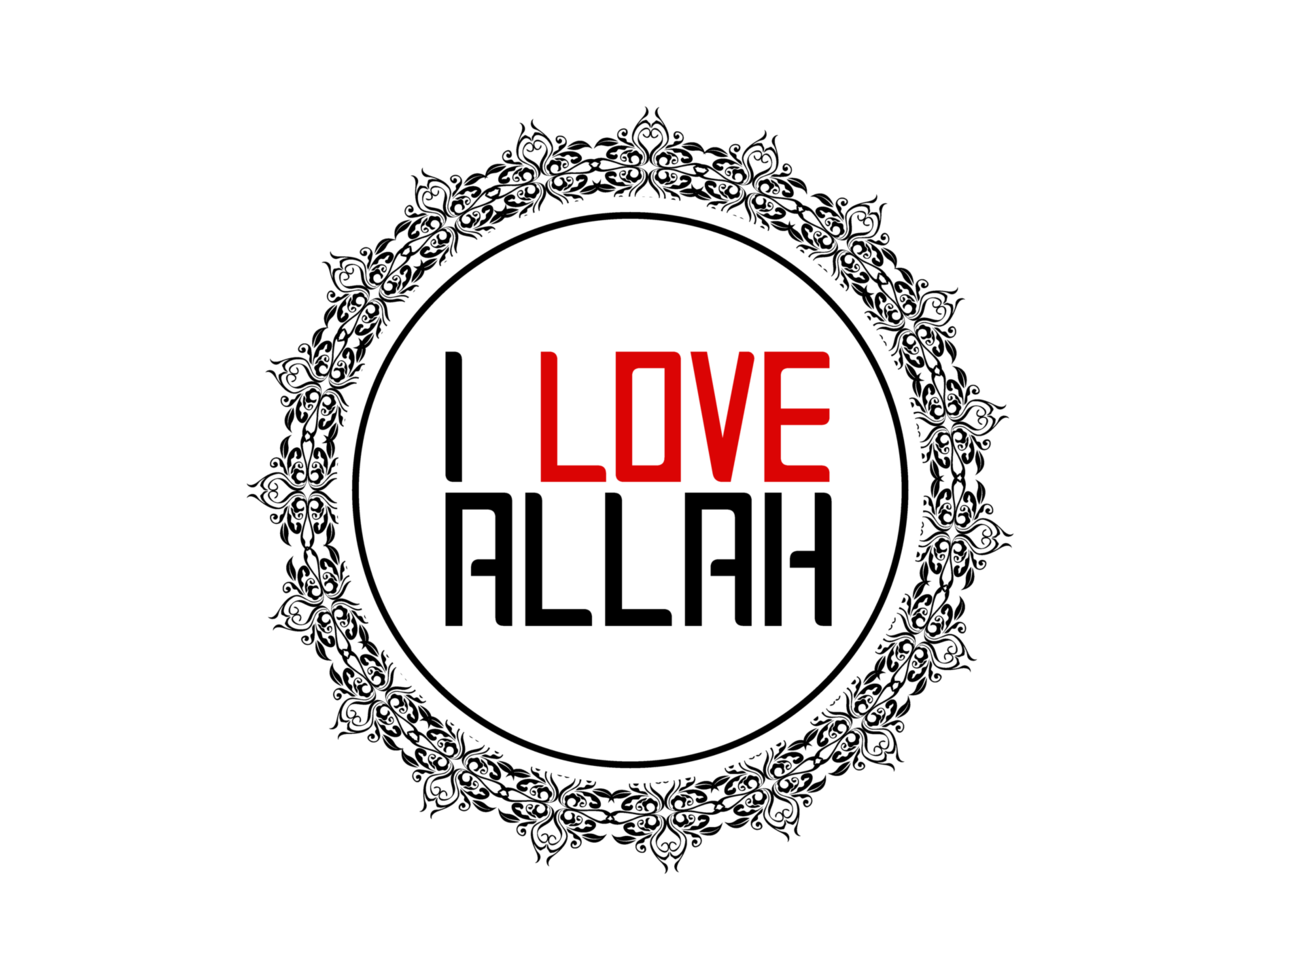 citas islámicas - amo a allah png